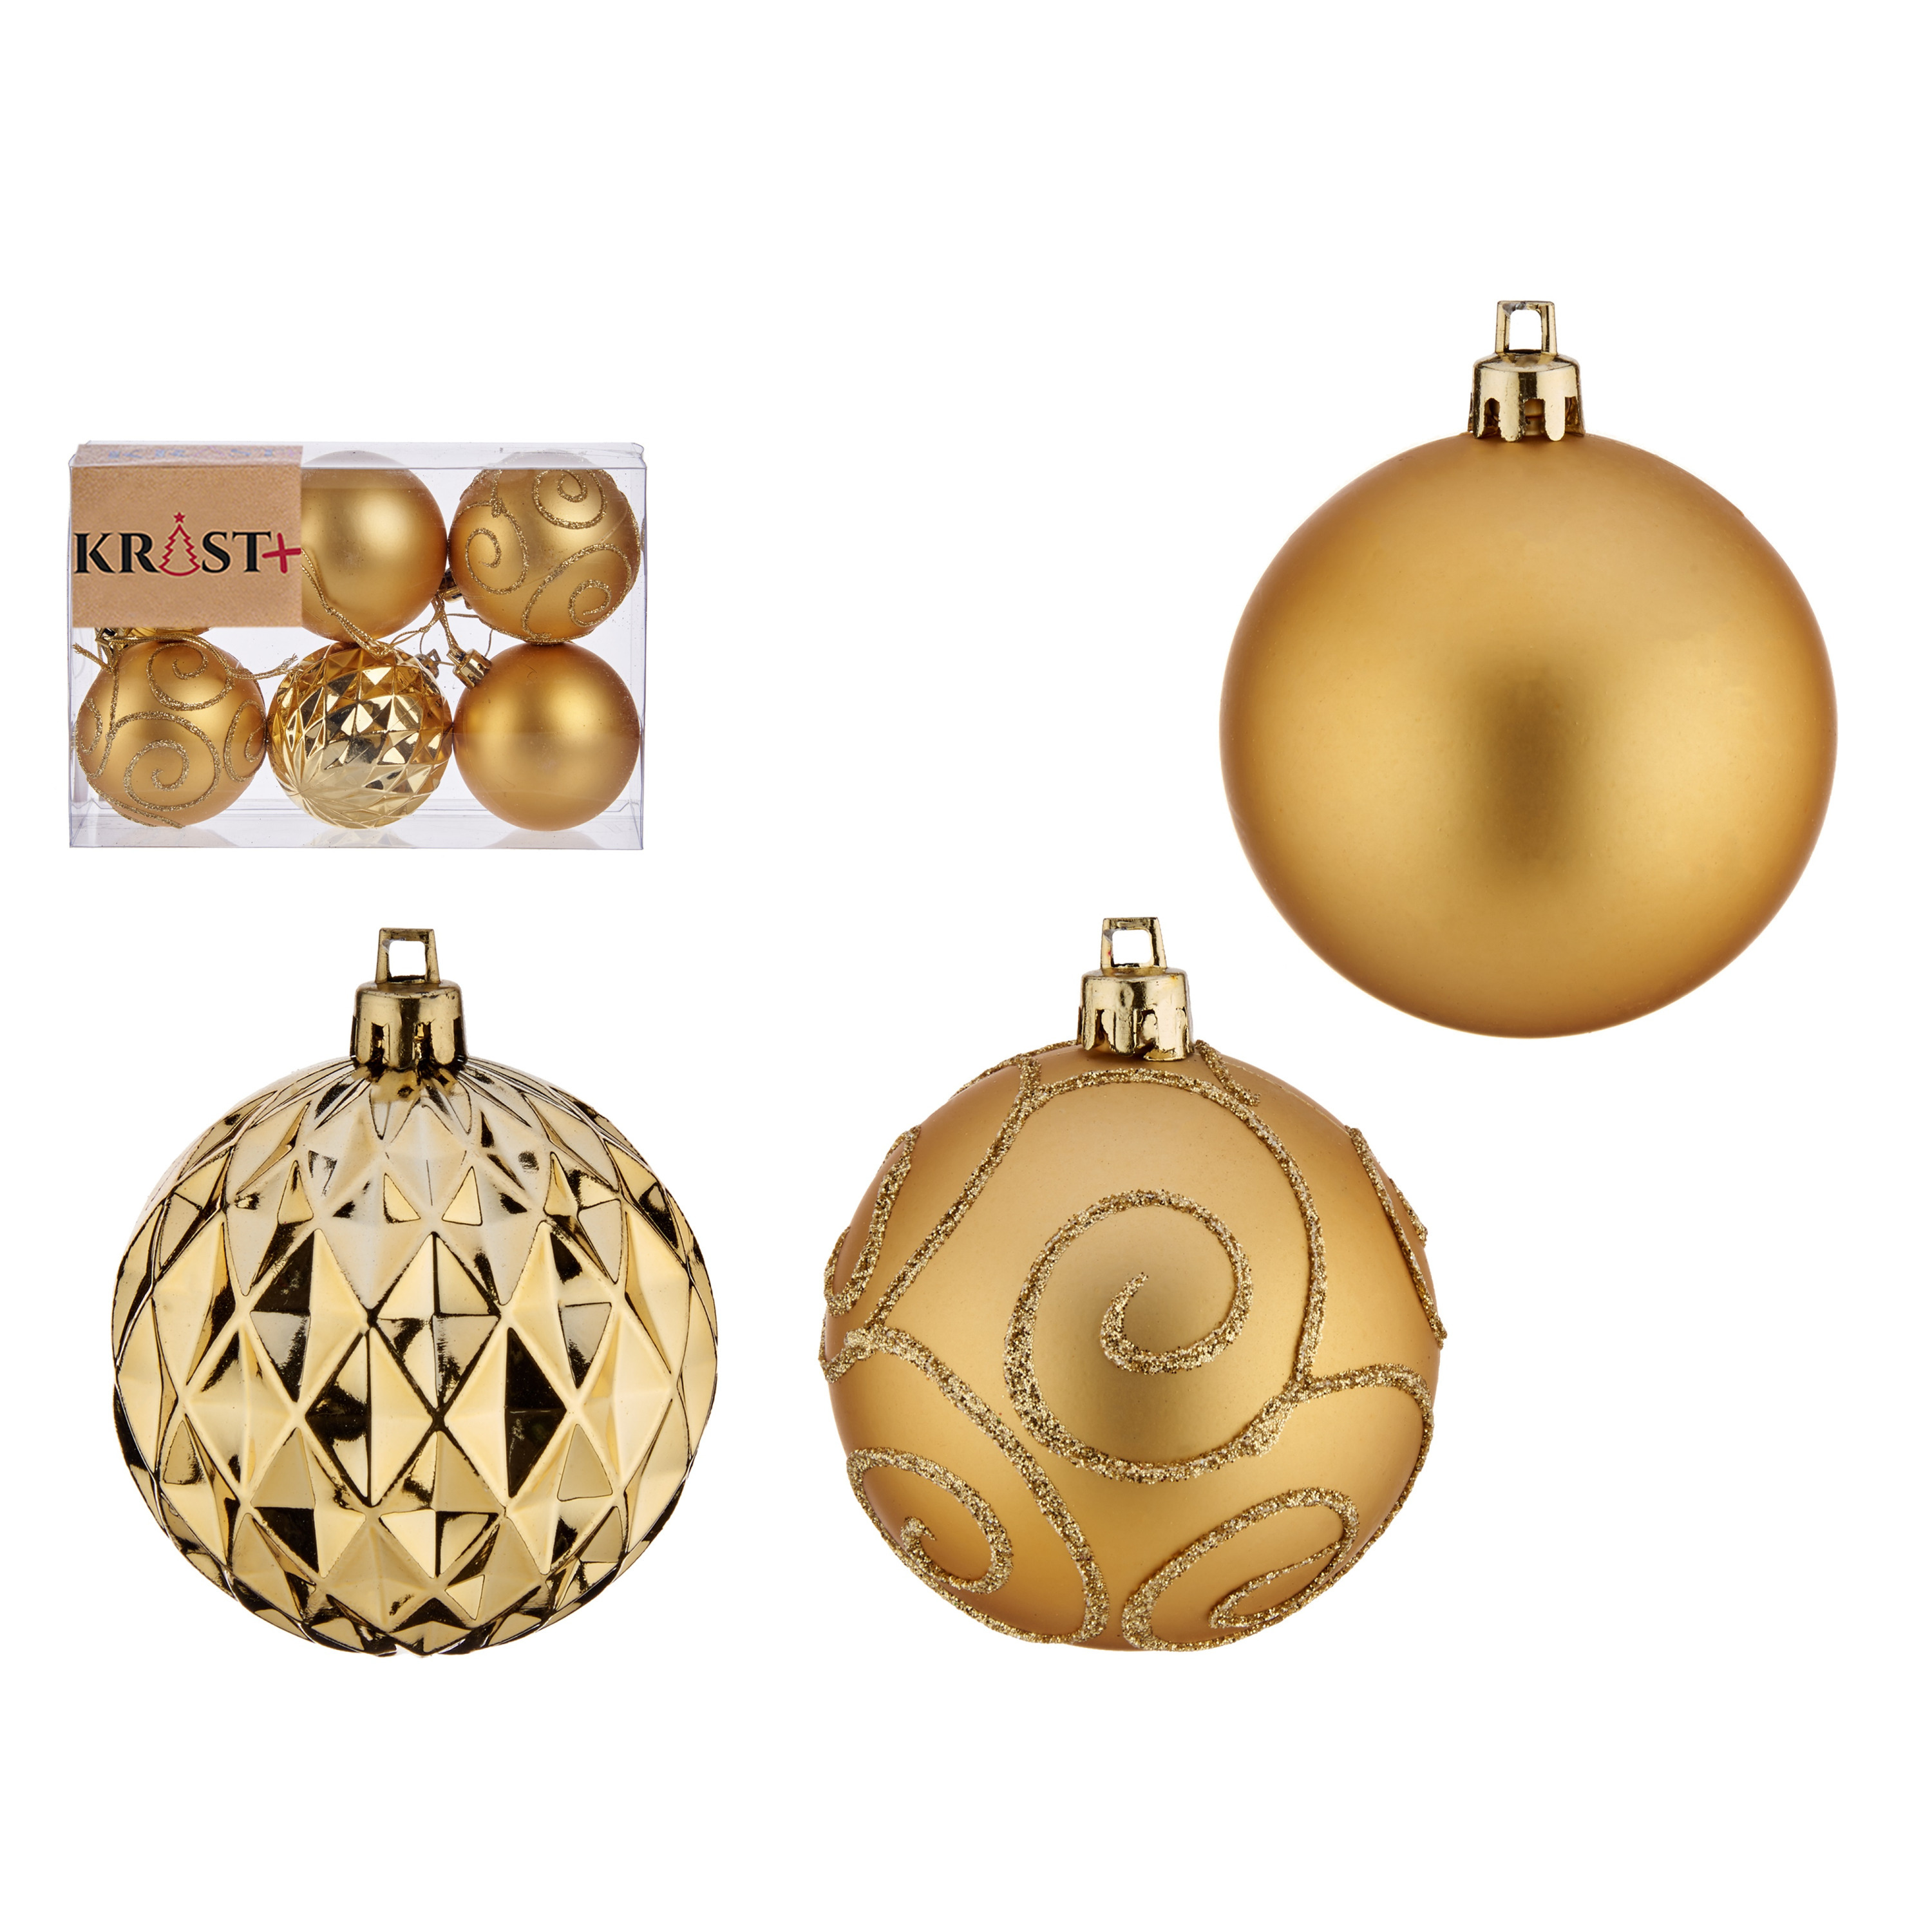 Krist+ kerstballen 6x stuks goud kunststof gedecoreerd